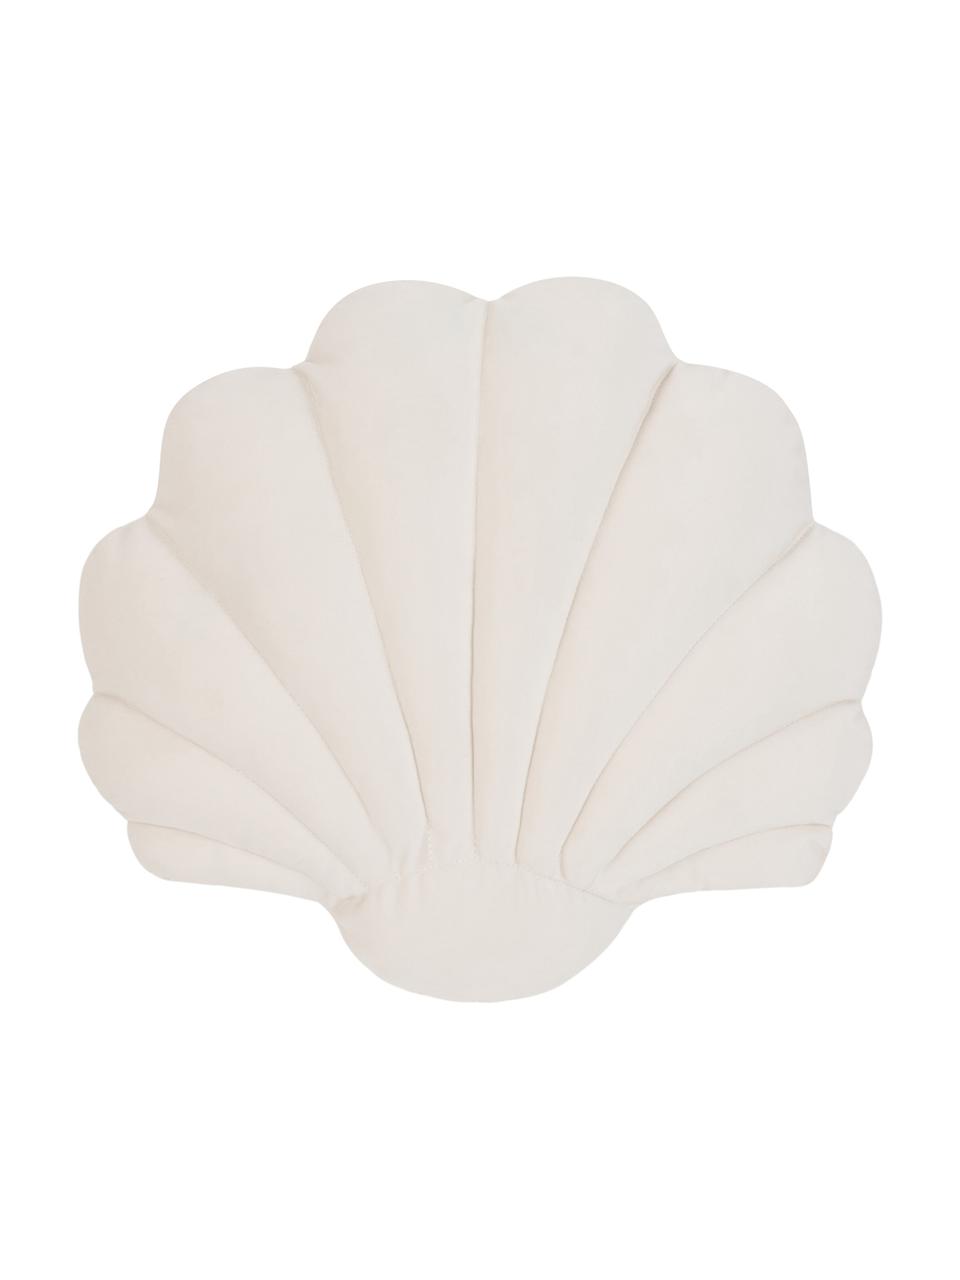 Fluwelen kussen Shell in schelp vorm, Crèmewit, 30 x 28 cm